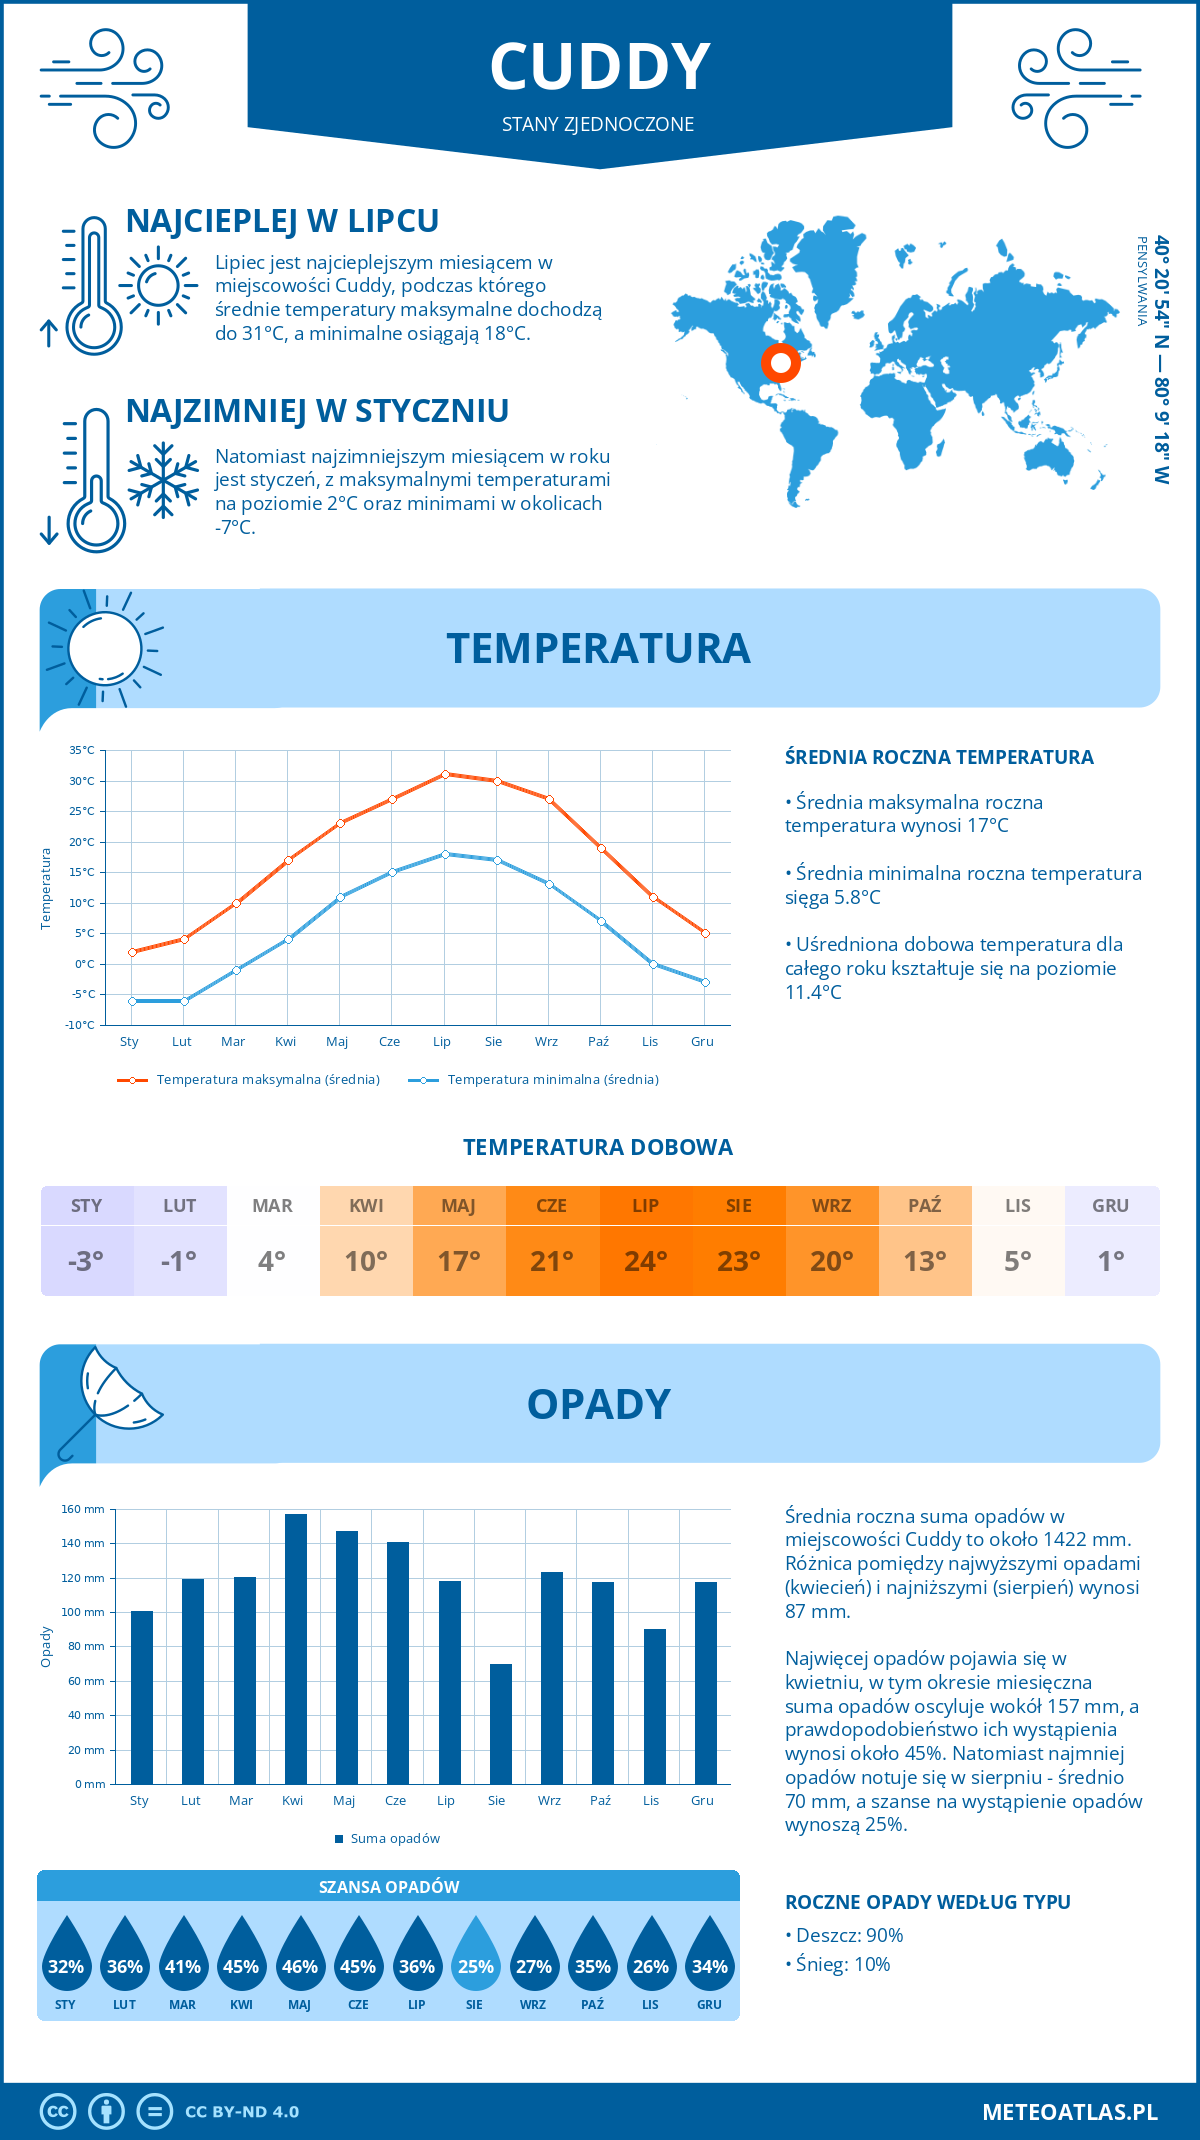 Pogoda Cuddy (Stany Zjednoczone). Temperatura oraz opady.